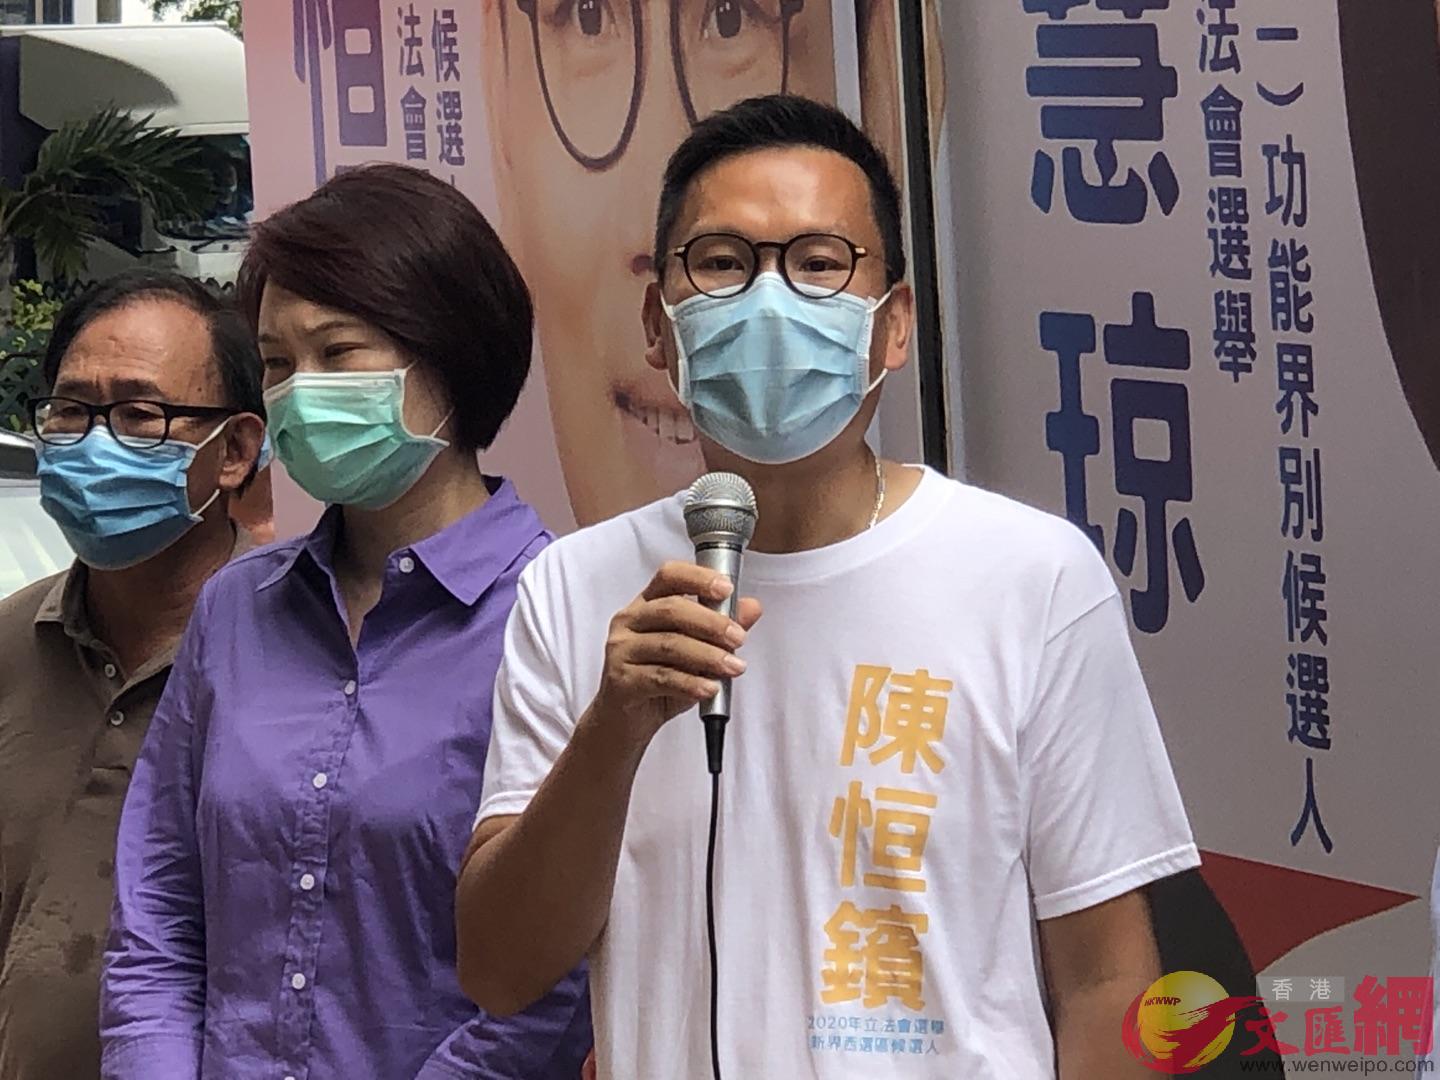 陳恒鑌呼籲選民9月6日走出來支持自己及團隊A一起團結向前A讓香港回歸繁榮C]大公文匯全媒體記者攝^